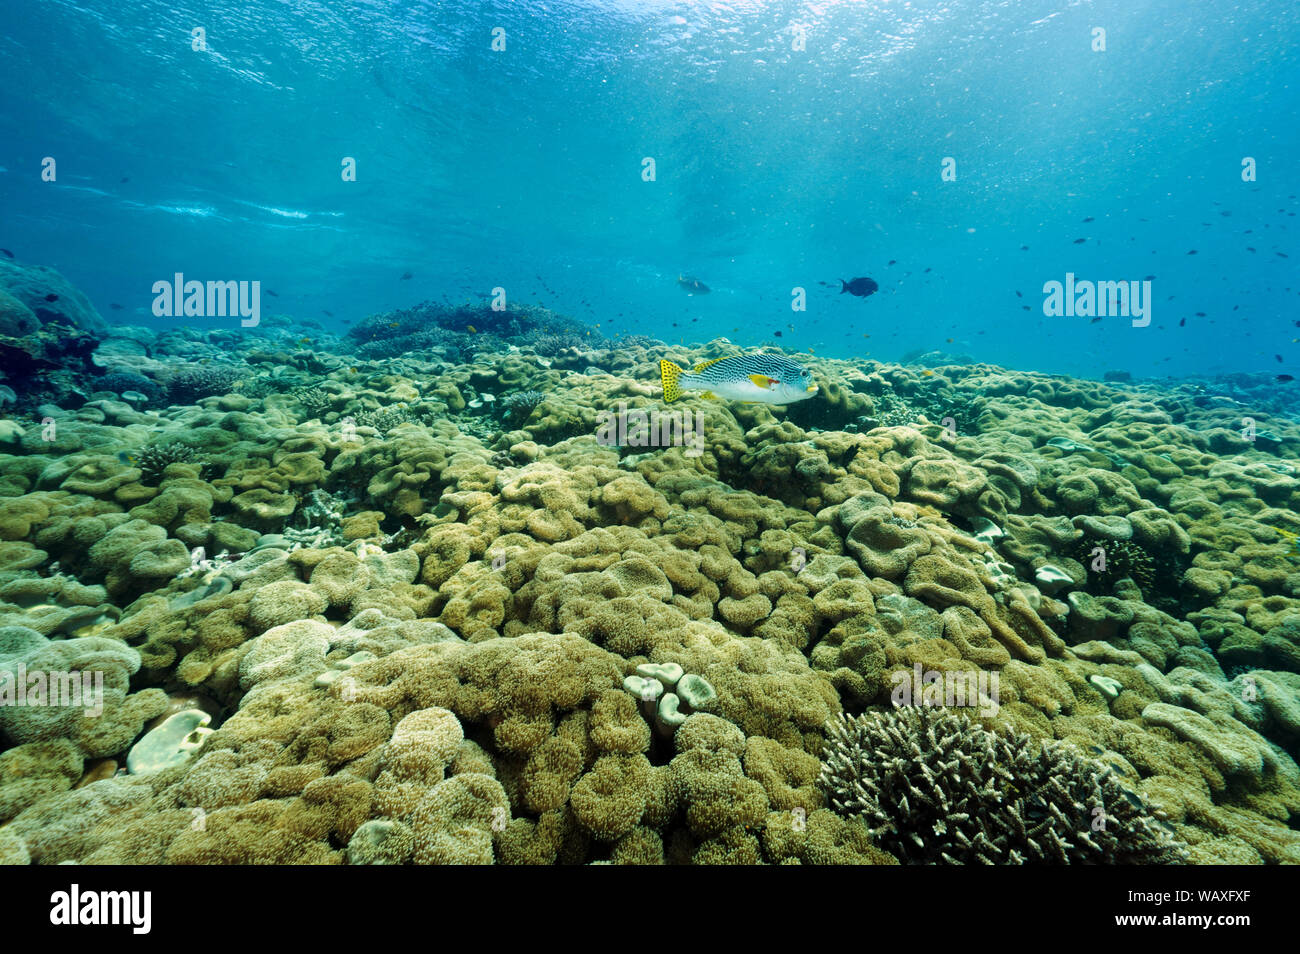 Reef scenic mit Weichkorallen, Sarcophyton crassocaule, Raja Ampat Indonesien. Stockfoto